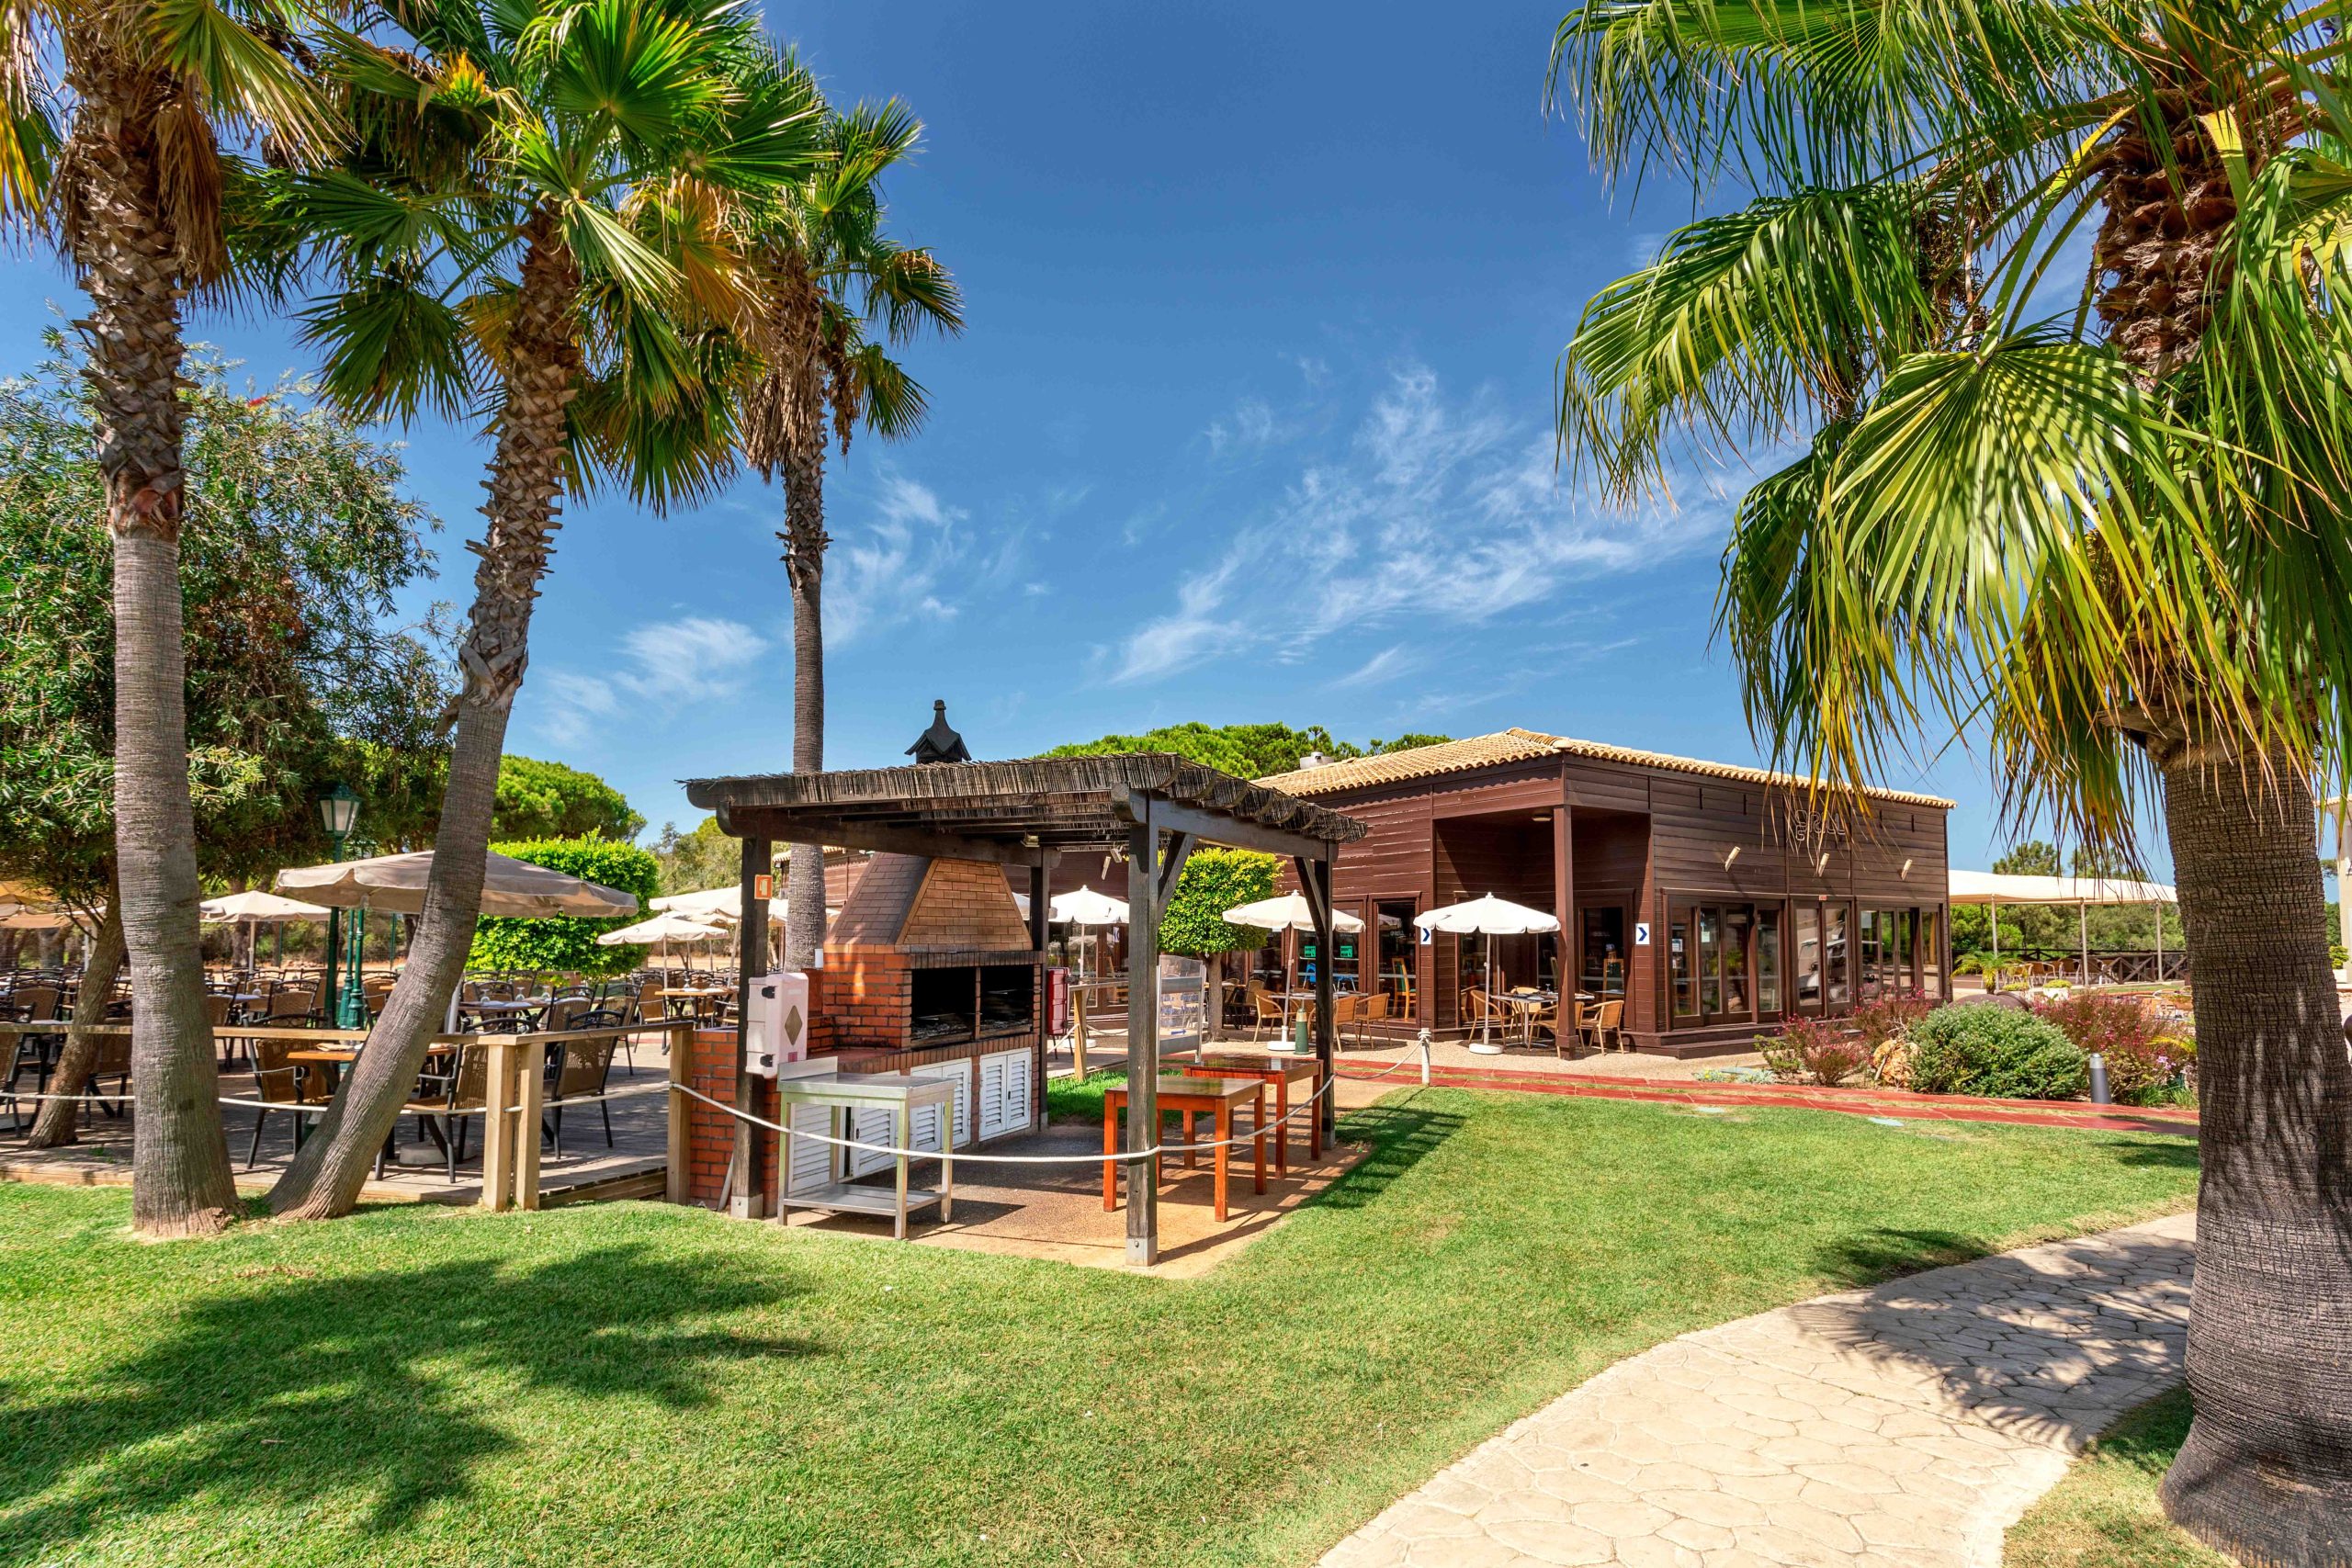 Restaurante Grill do hotel AP Adriana Beach Resort feito com base de madeira e localizado numa zona verde